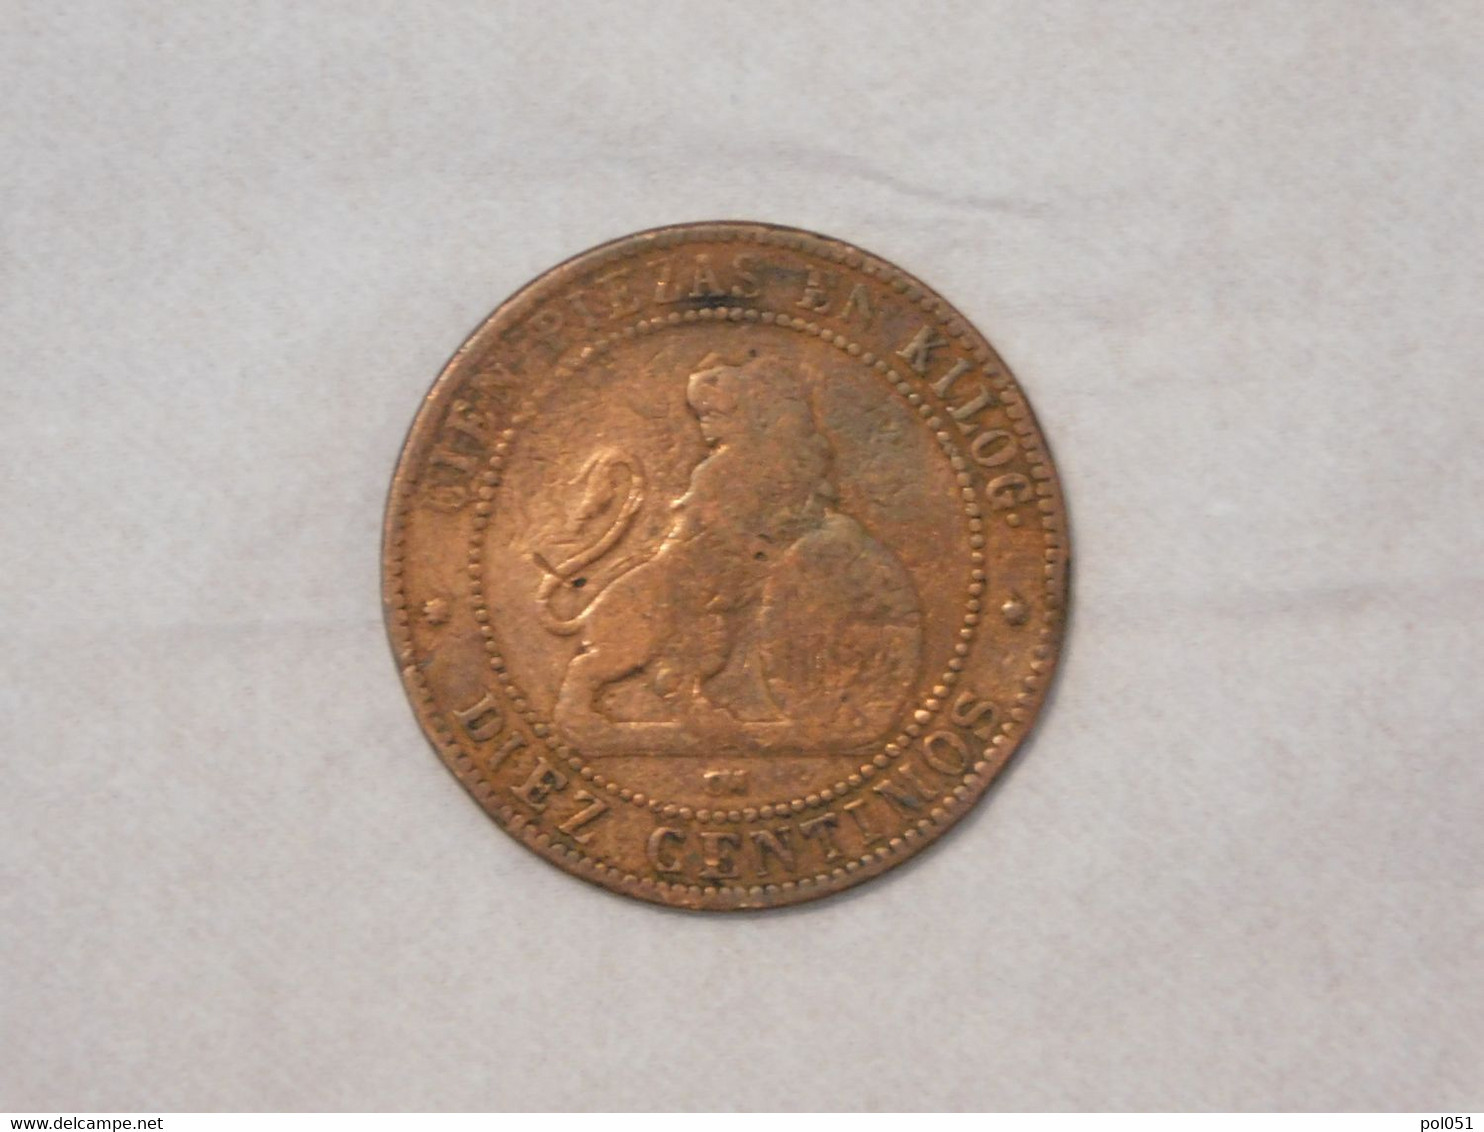 ESPAGNE SPAIN 10 DIEZ CENTIMOS CENT DE REAL 1870 - Monete Provinciali